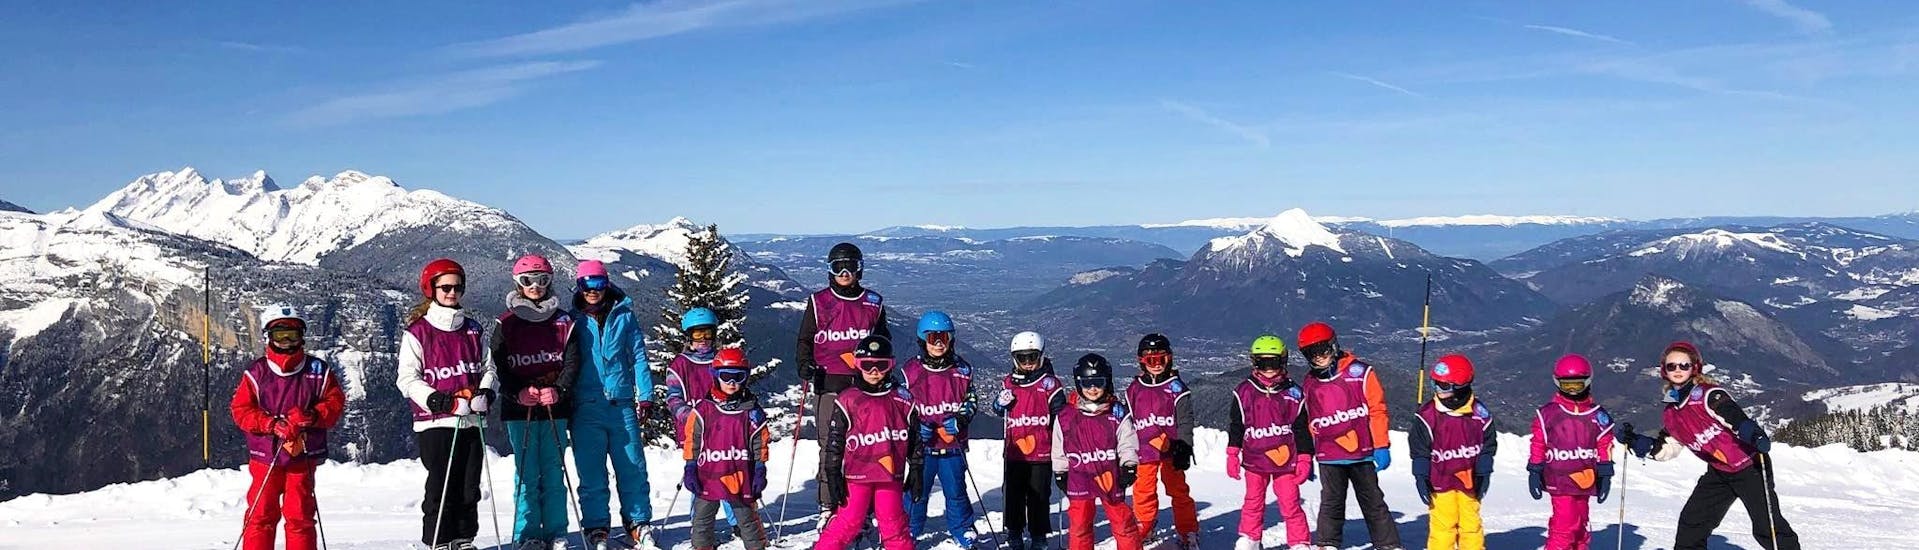 Cours de ski Enfants (5-15 ans) à Flaine.